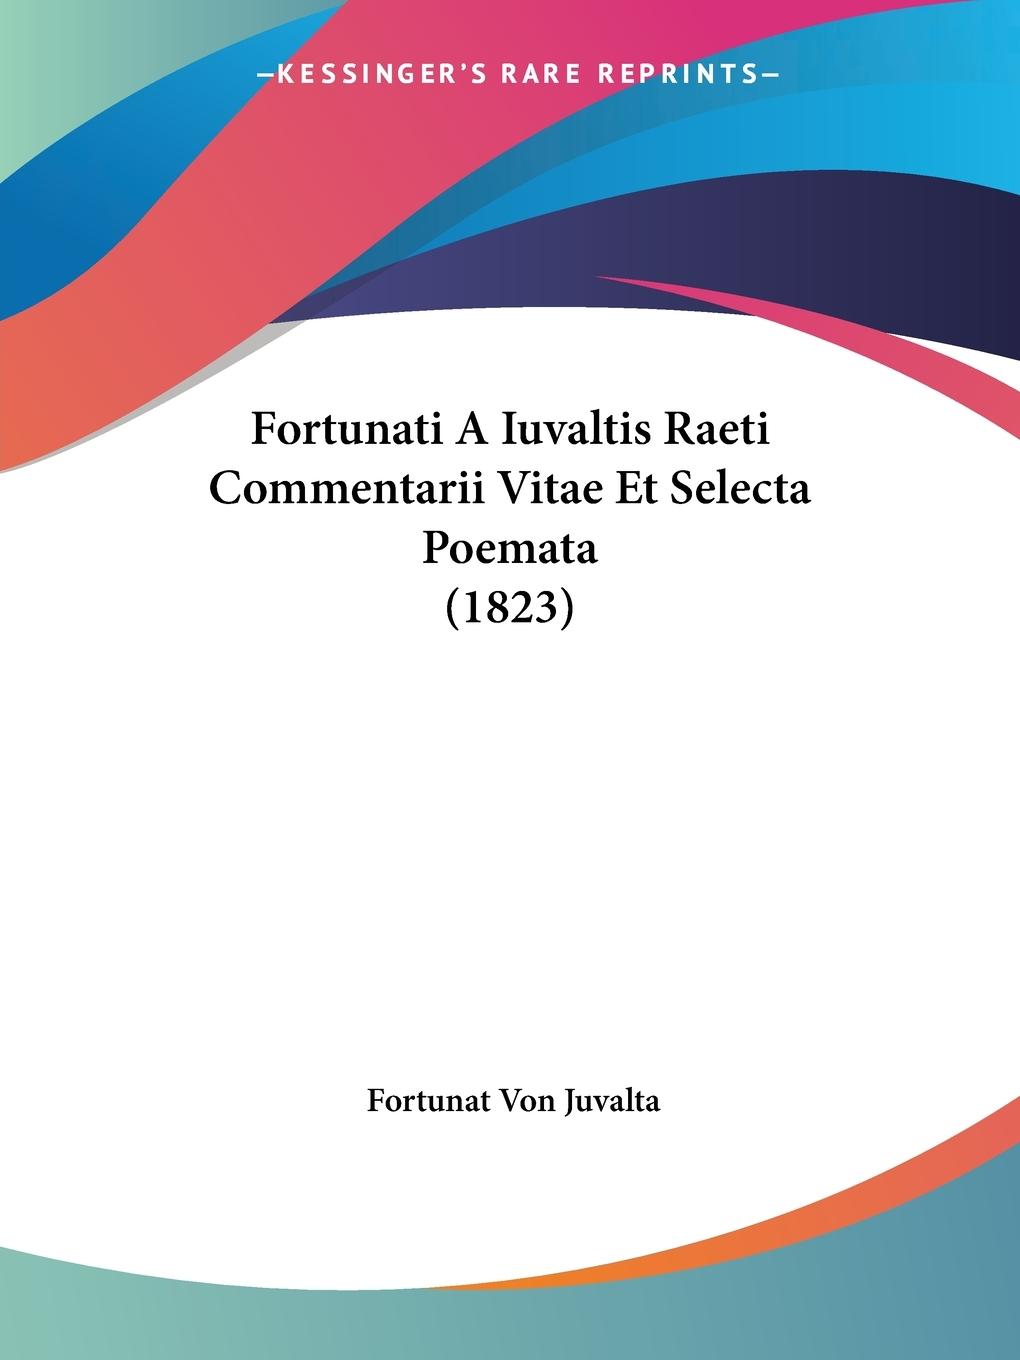 Fortunati A Iuvaltis Raeti Commentarii Vitae Et Selecta Poemata (1823) - Juvalta, Fortunat Von